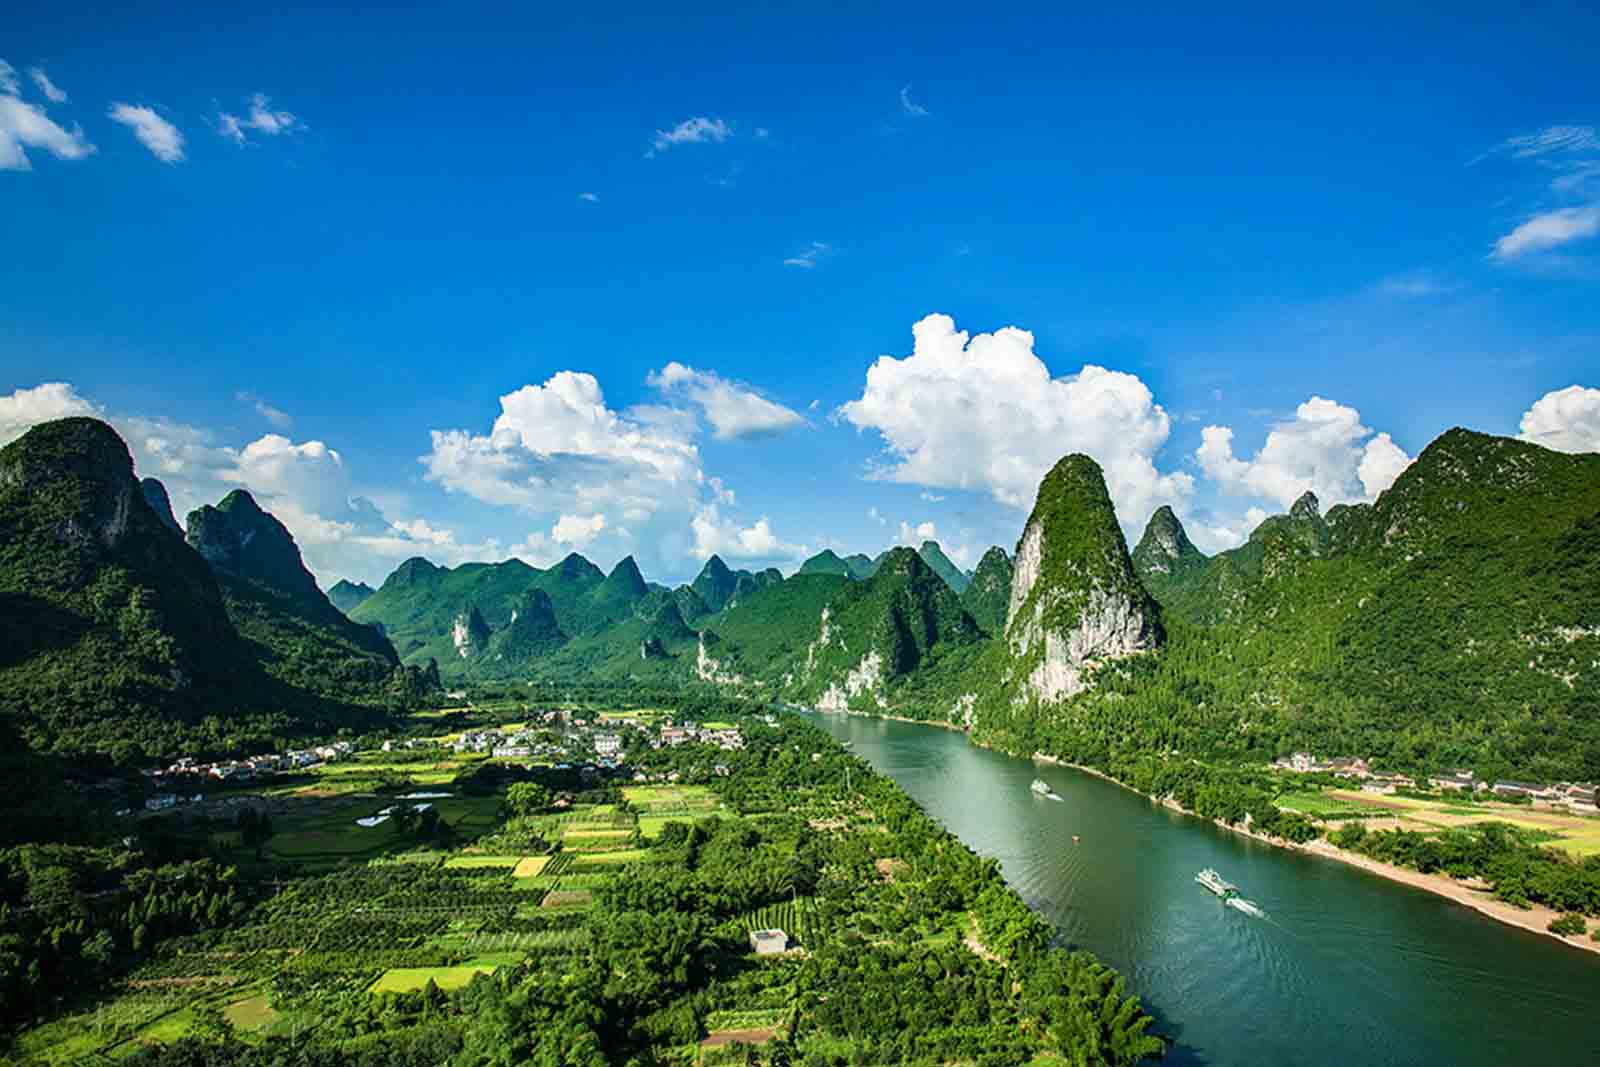 漓江风景名胜区位于广西桂林市漓江流域西南面区域,是漓江流域喀斯特